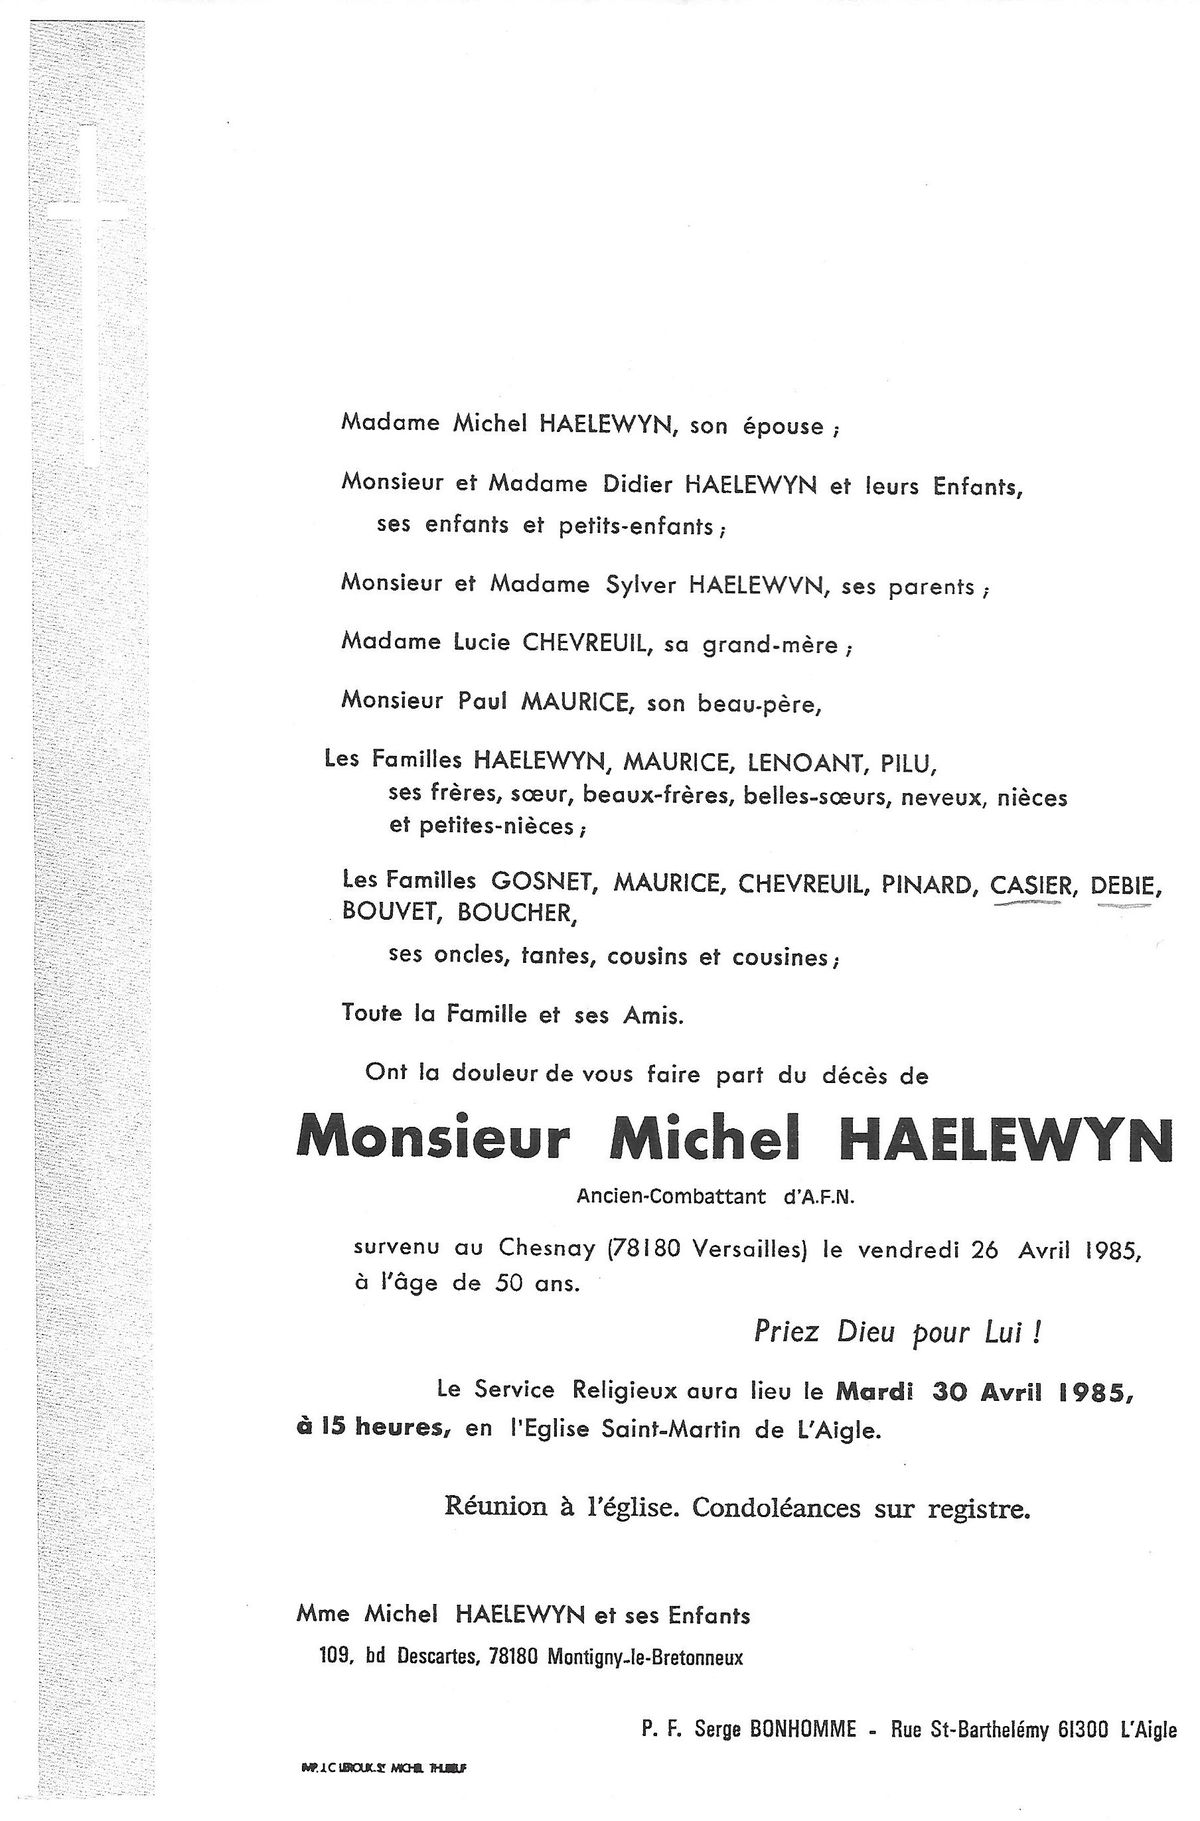 Michel HAELEWYN 26/04/1985